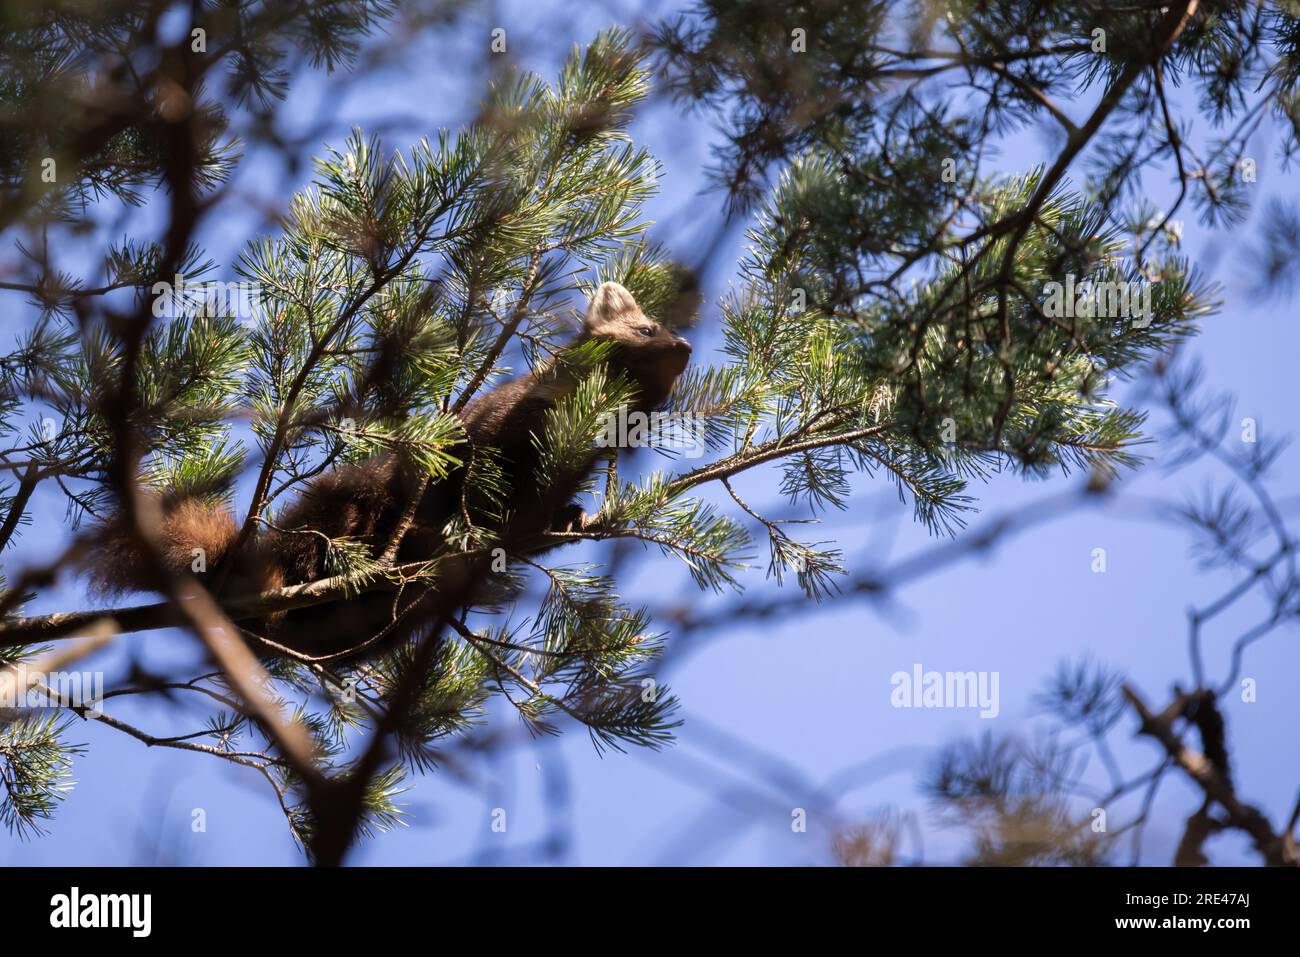 La martora europea di pini si trova sui rami di un pino. Nota anche come martora di pino, è un mustelide meno comunemente conosciuto anche come baum marten, o dolce ma Foto Stock